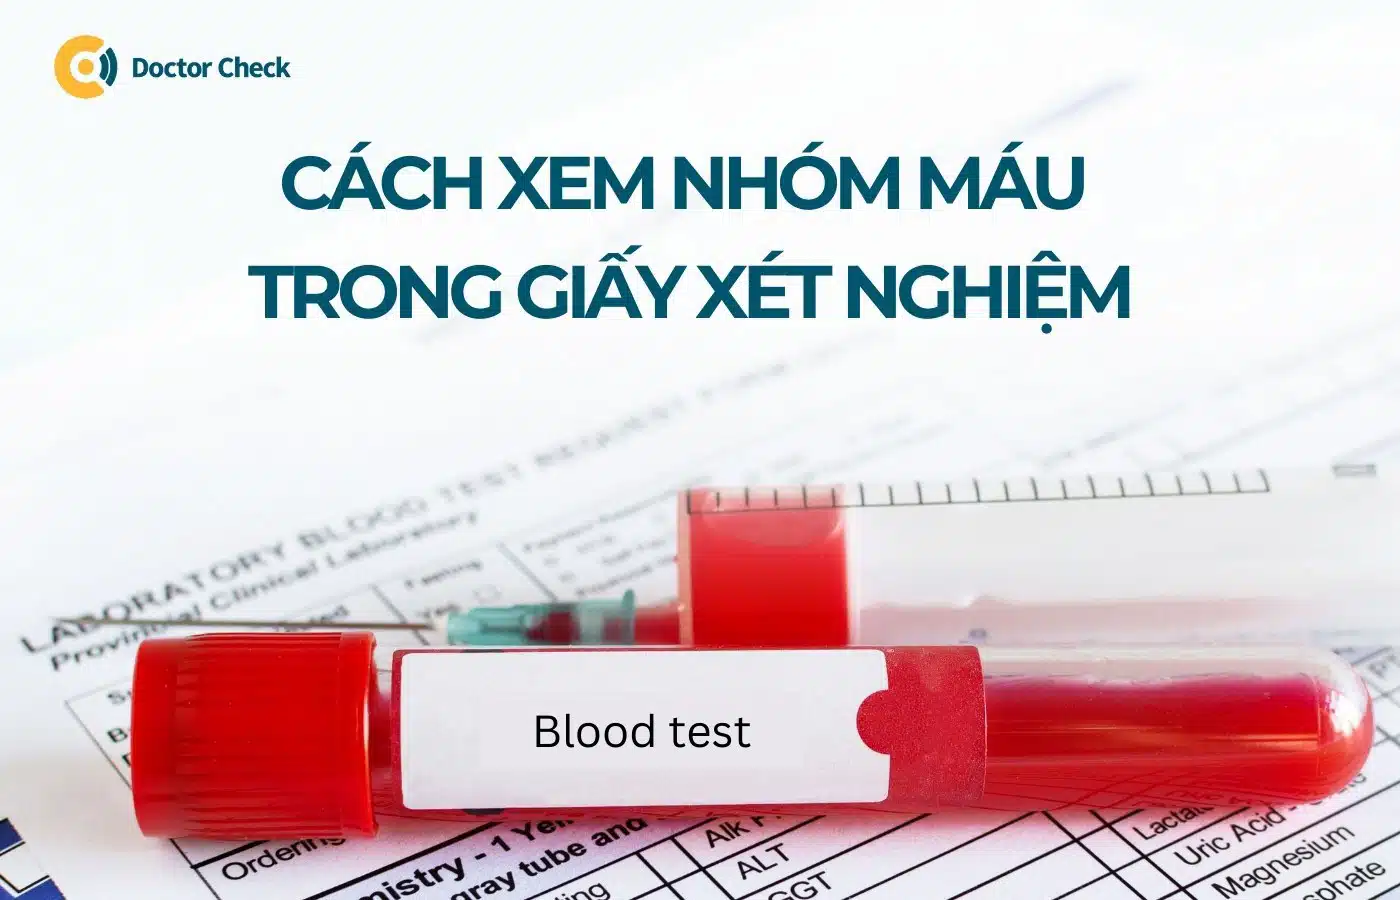 Cách xem nhóm máu trong giấy xét nghiệm